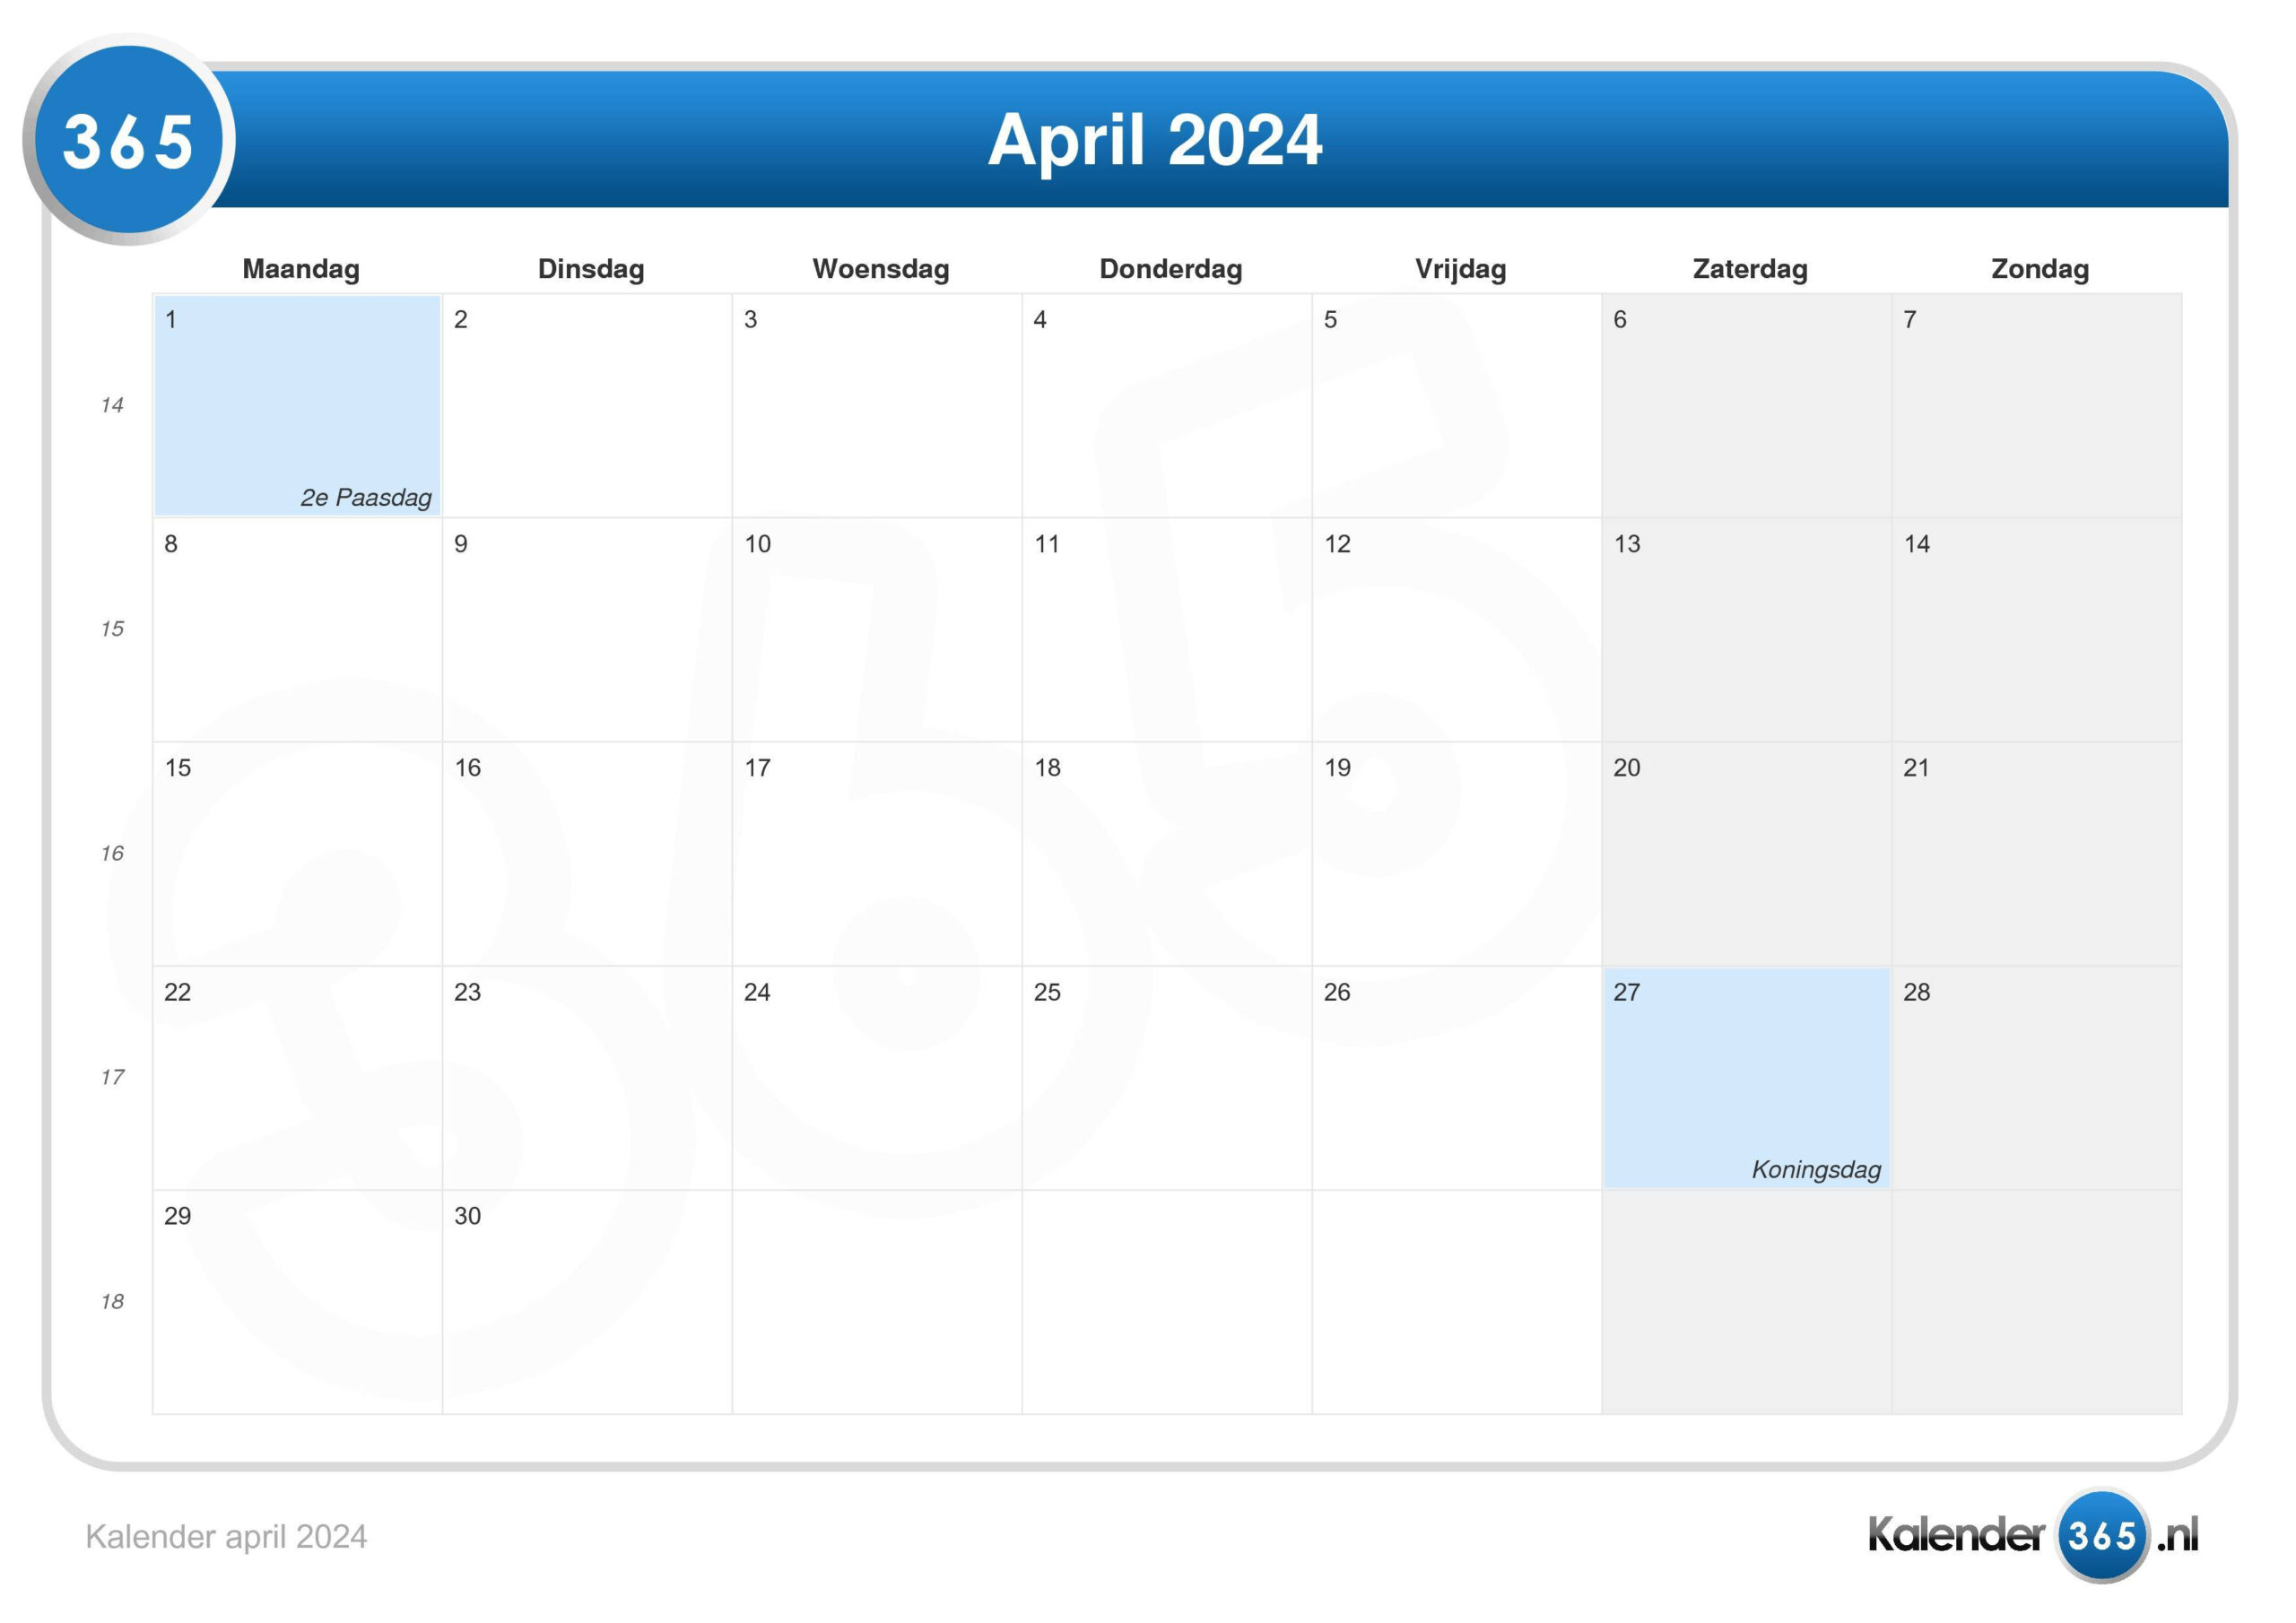 Kalender April 2024 with regard to Calender April 2024